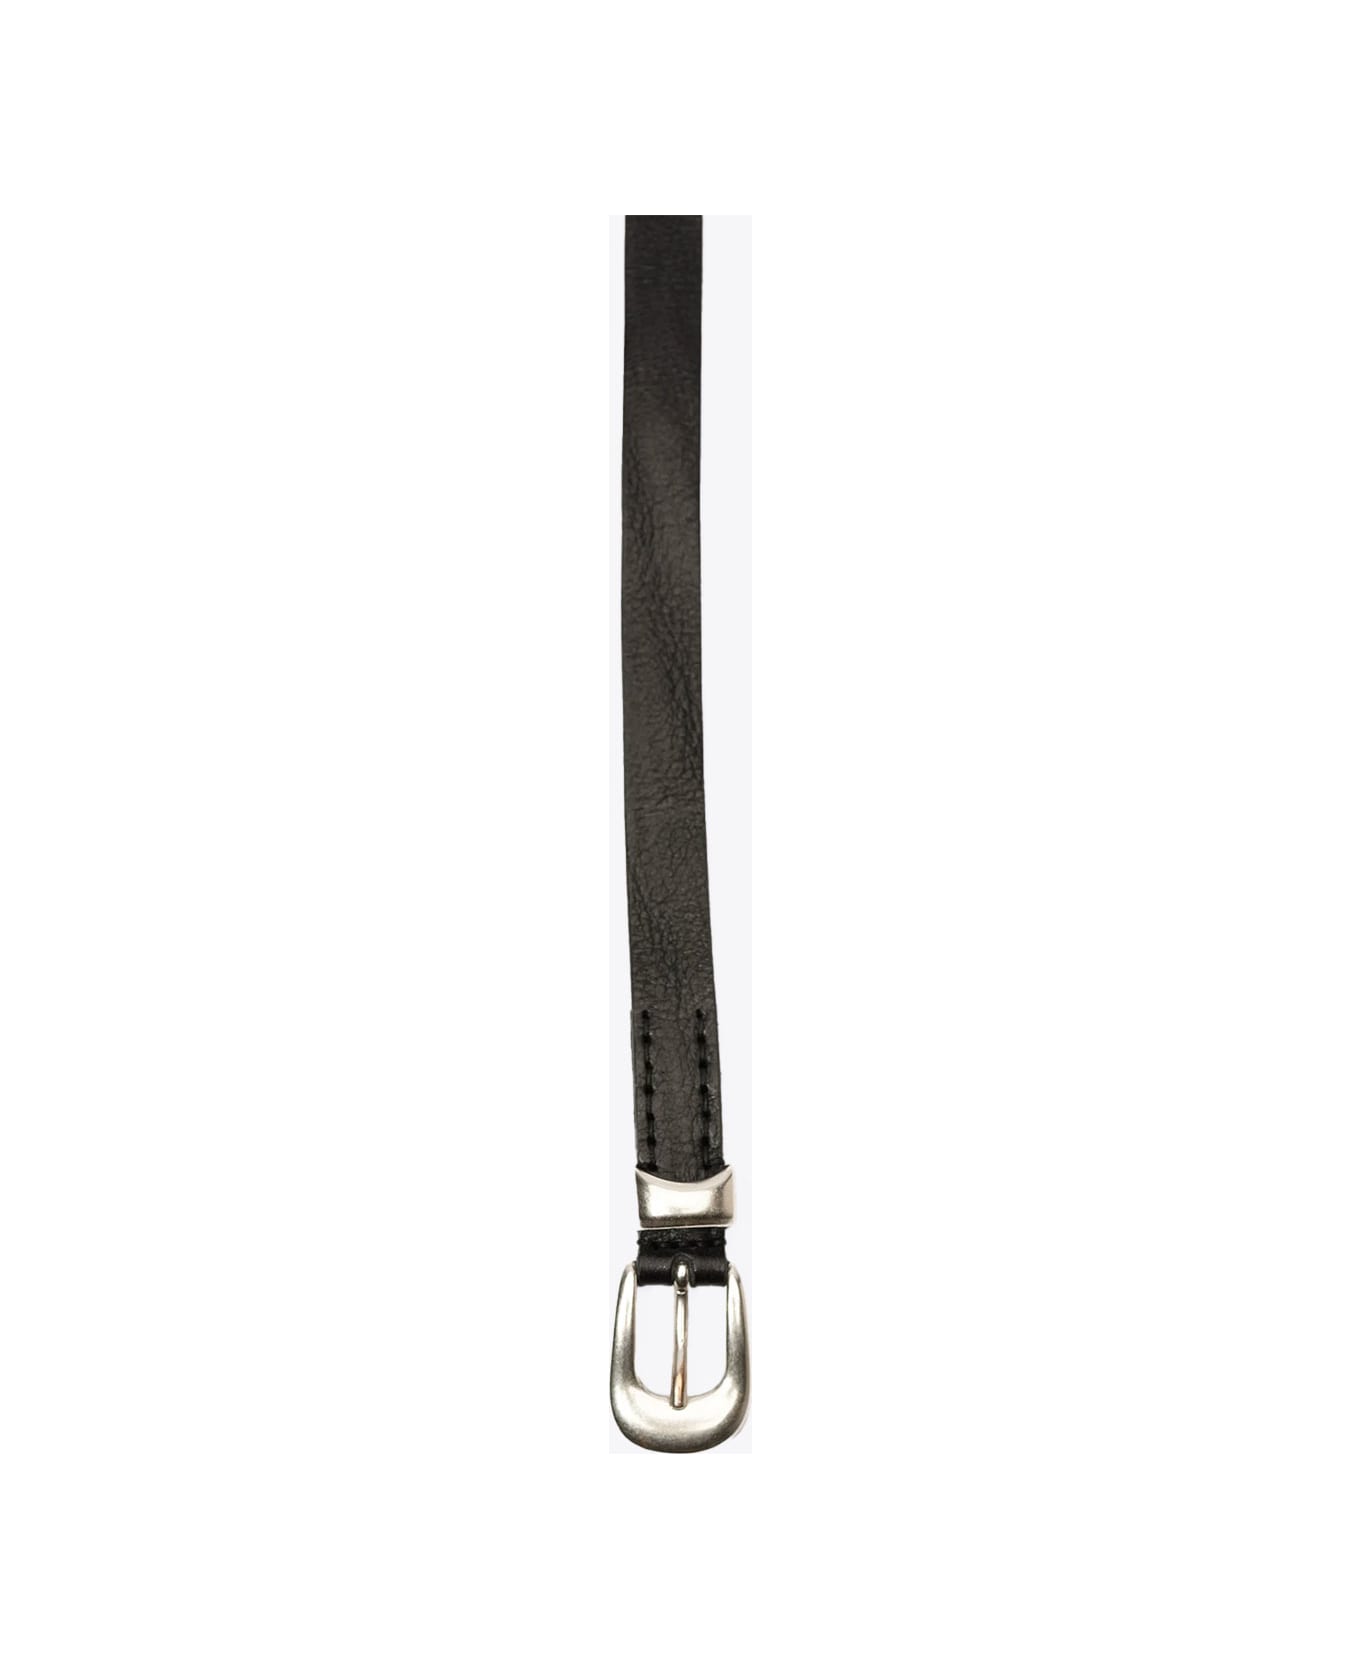 Our Legacy 2 Cm Belt Black leather belt - 2 cm belt - Nero name:456